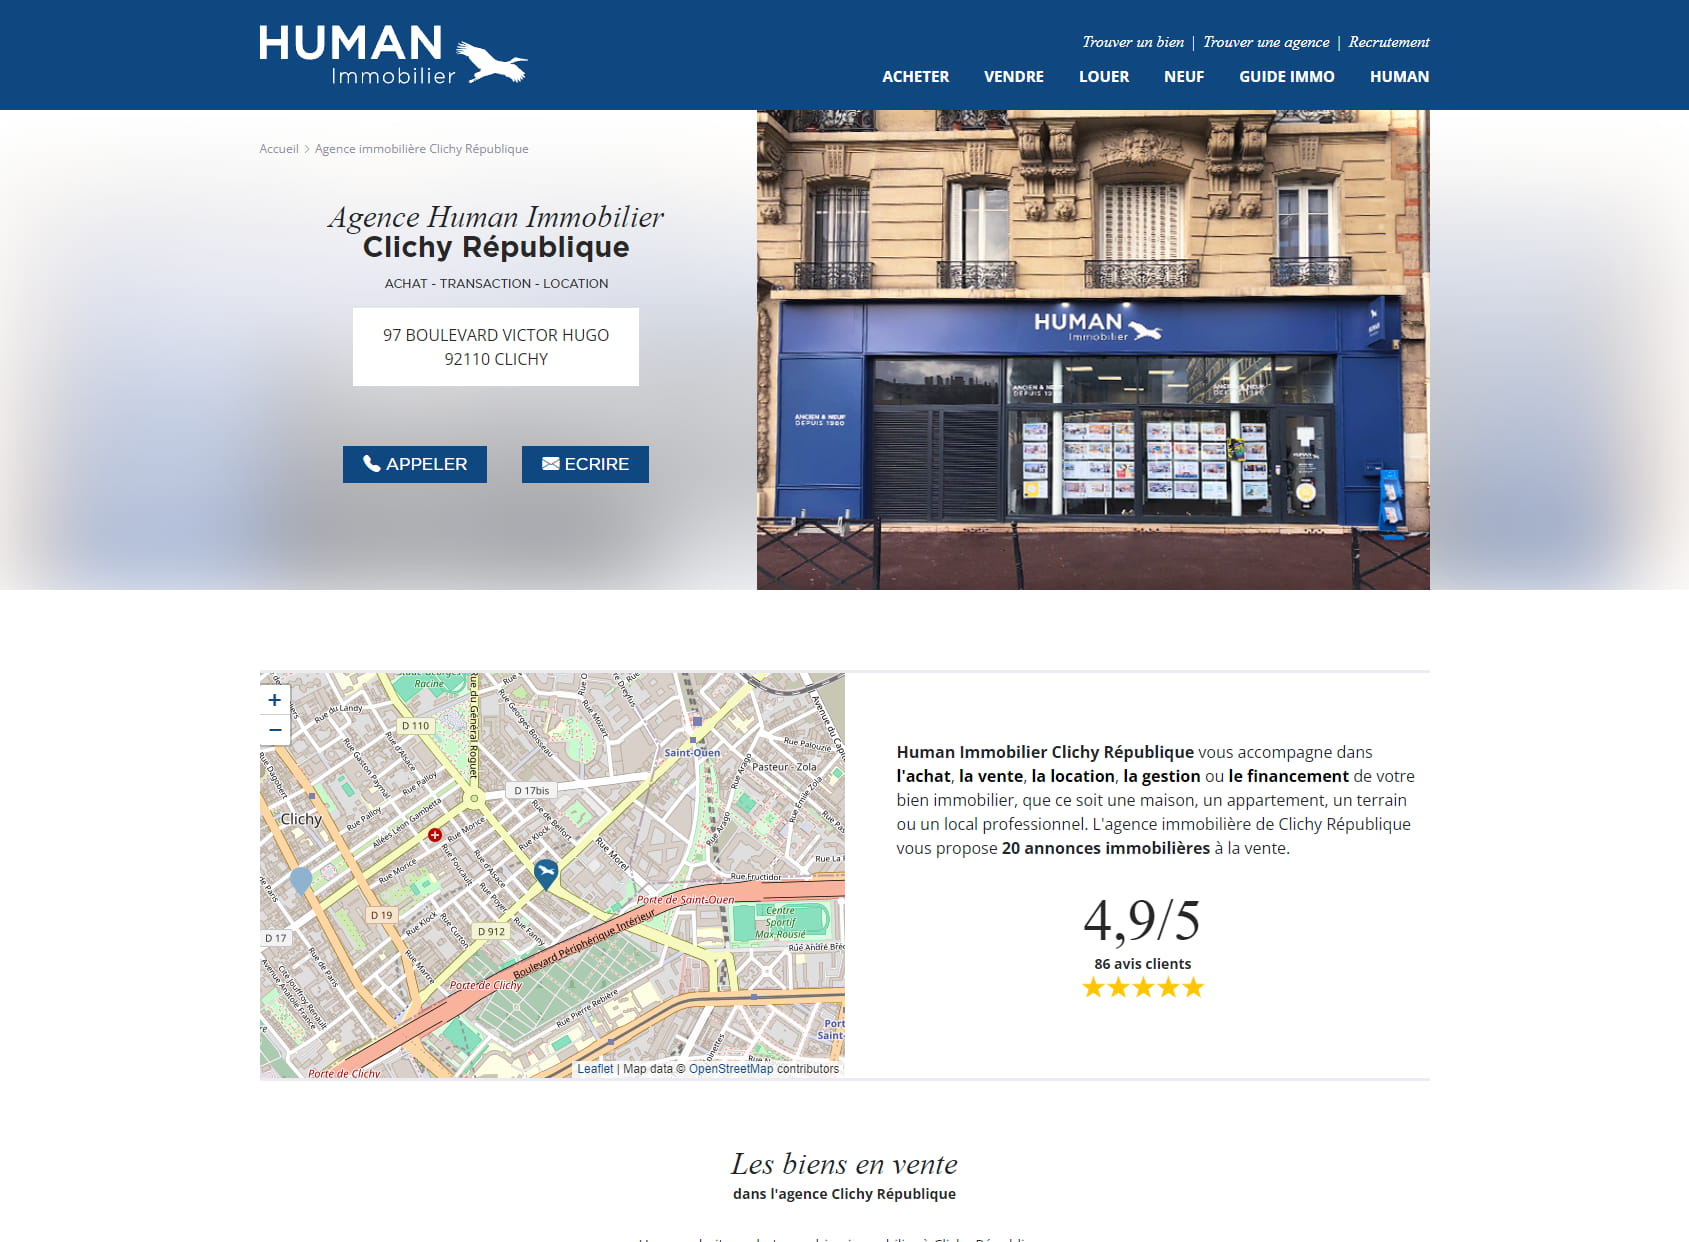 Human Immobilier Clichy République